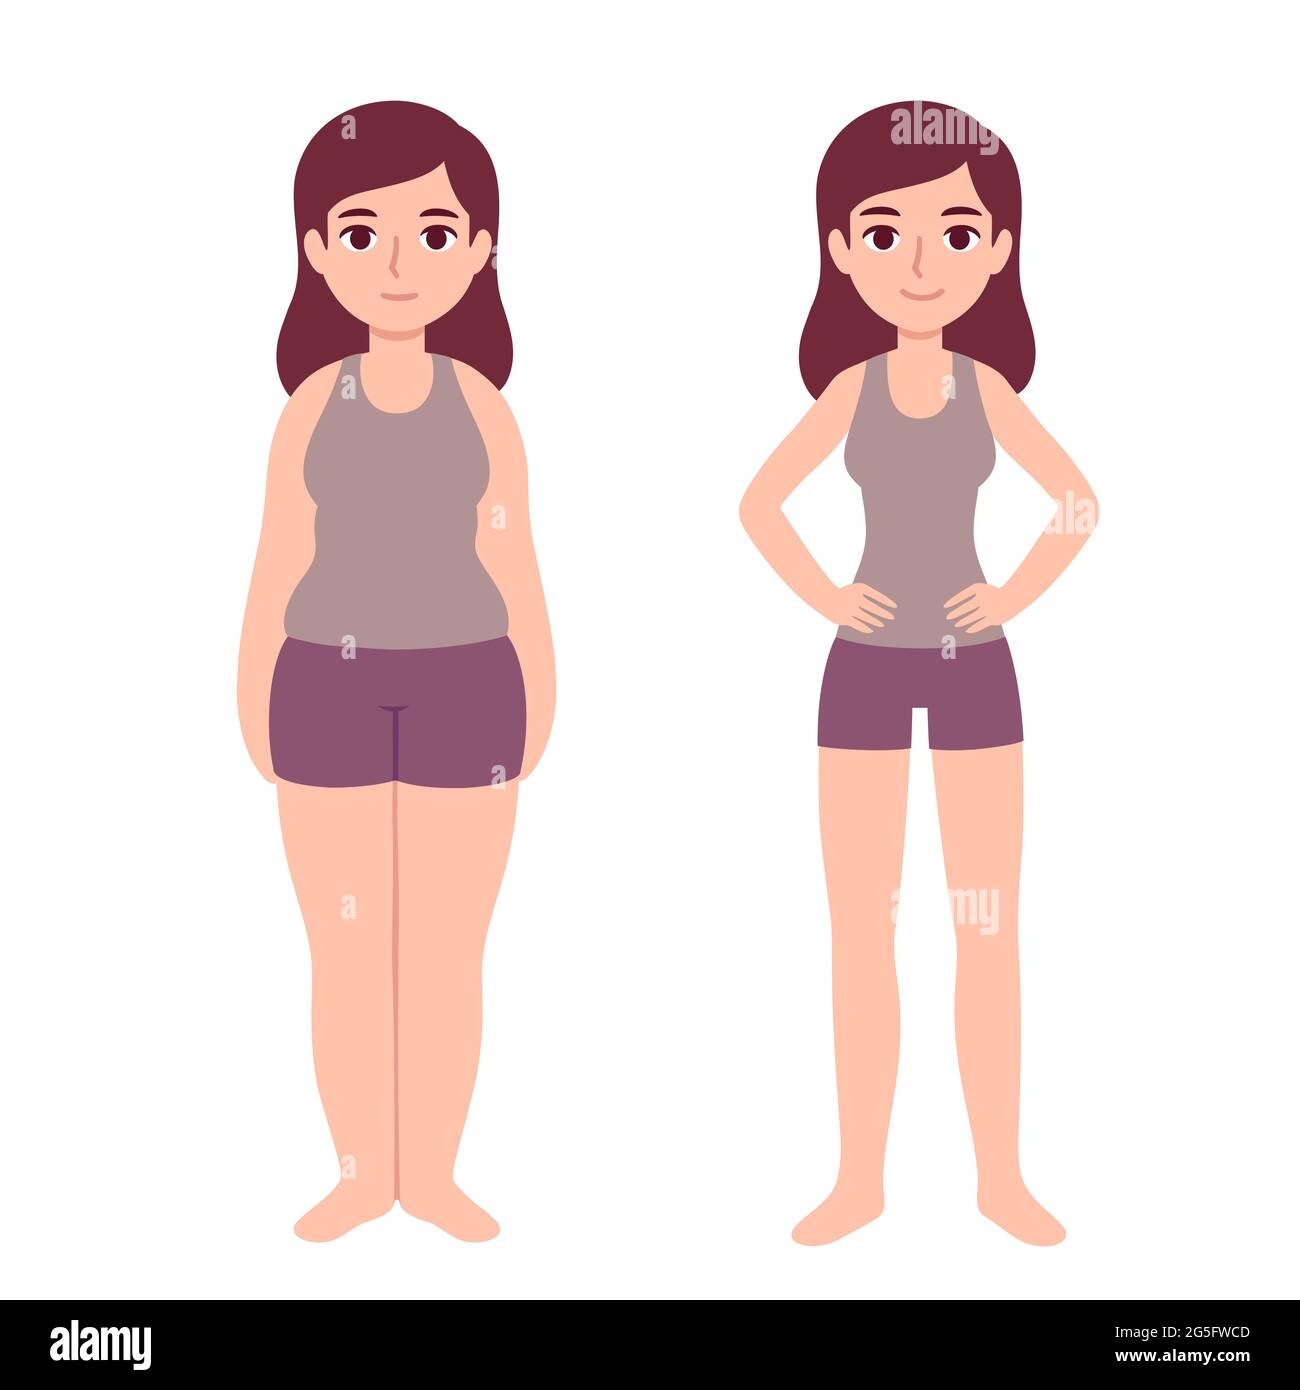 Nette Cartoon-Frau in Fitness-Kleidung mit zwei Körpertypen: Übergewicht und schlank. Gewichtsverlust vor und nach. Einfache moderne Vektorgrafik. Stock Vektor